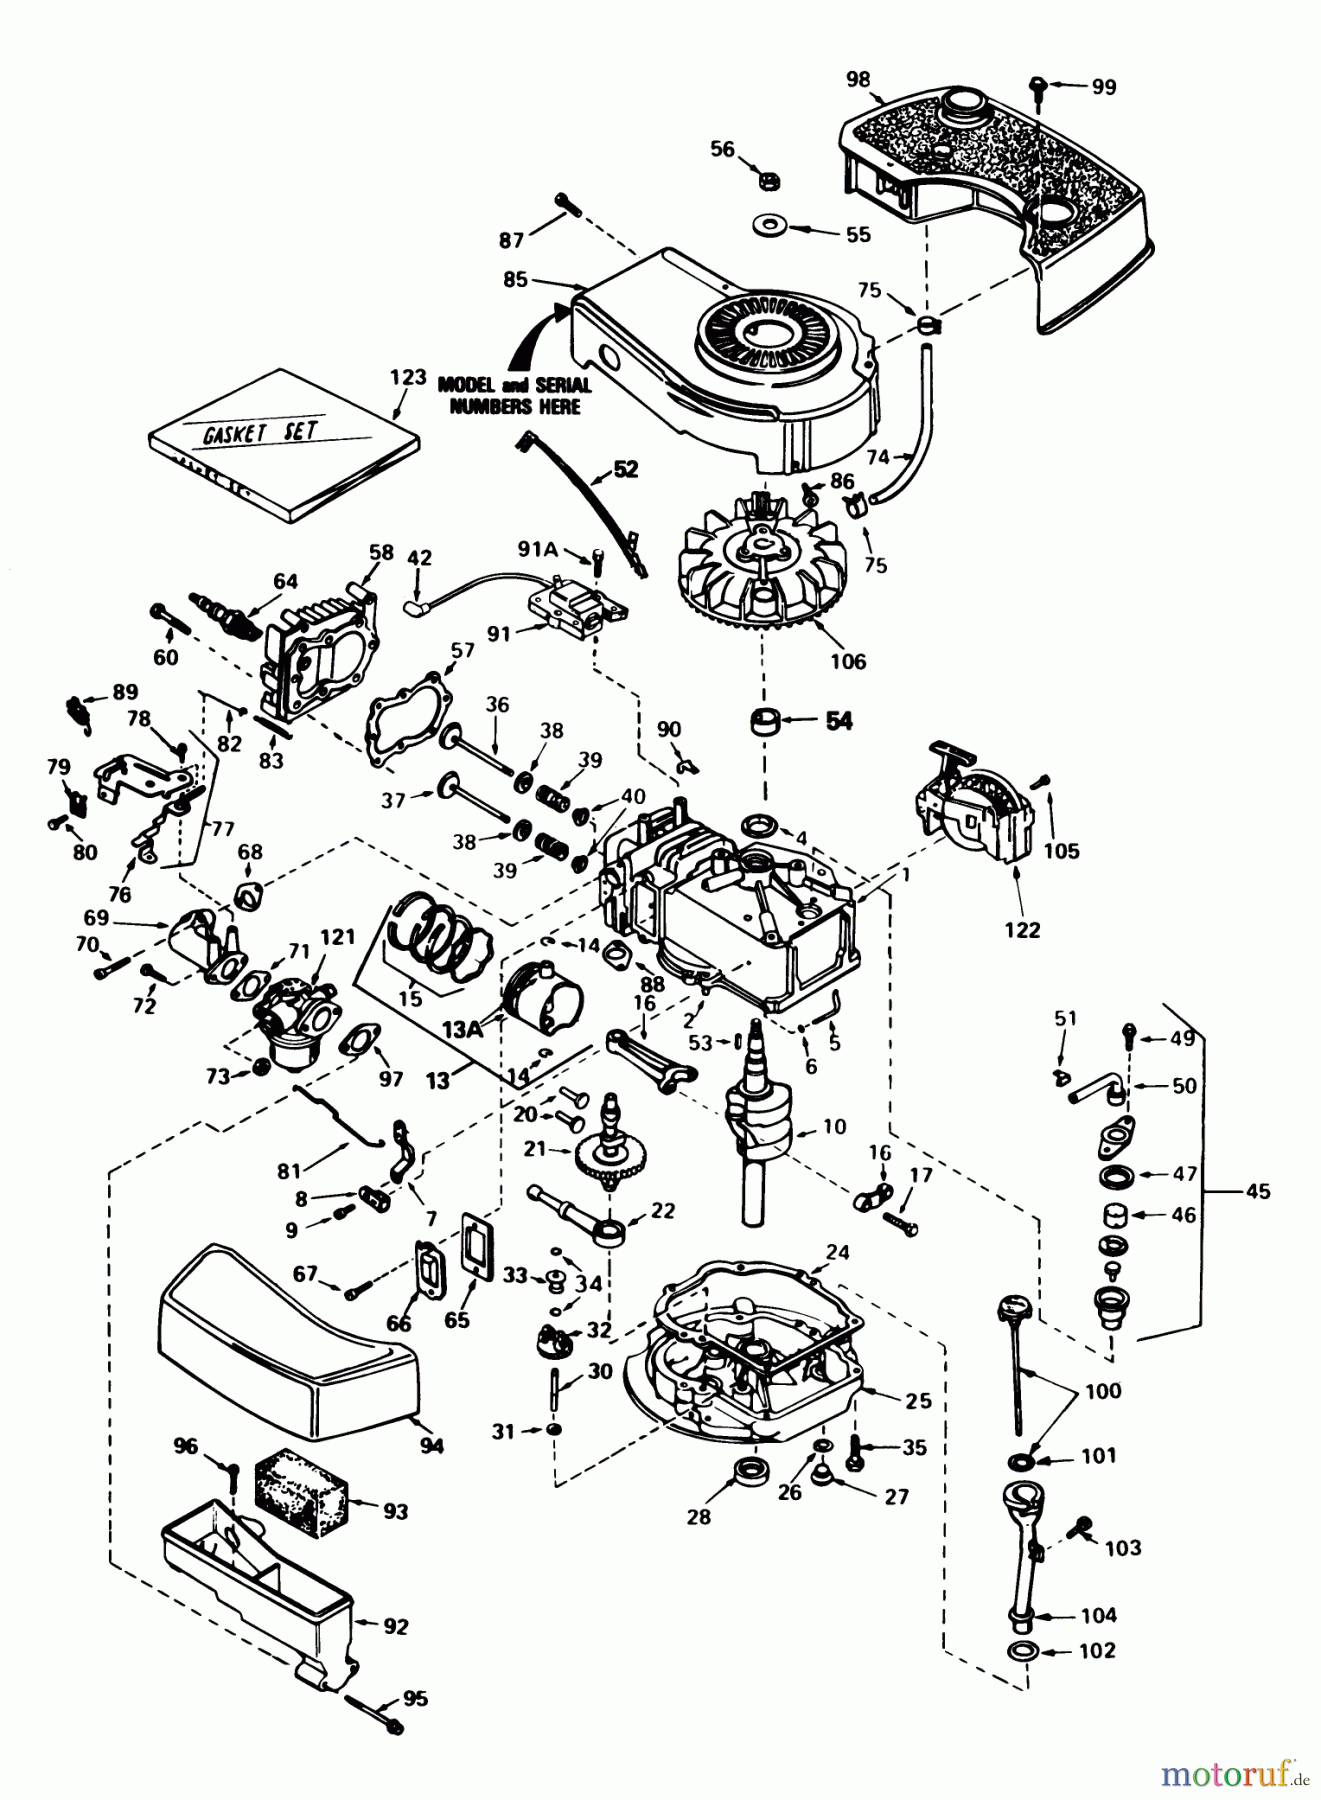  Toro Neu Mowers, Walk-Behind Seite 1 16299C - Toro Lawnmower, 1986 (6000001-6999999) ENGINE TECUMSEH MODEL NO. TNT 100-10086E